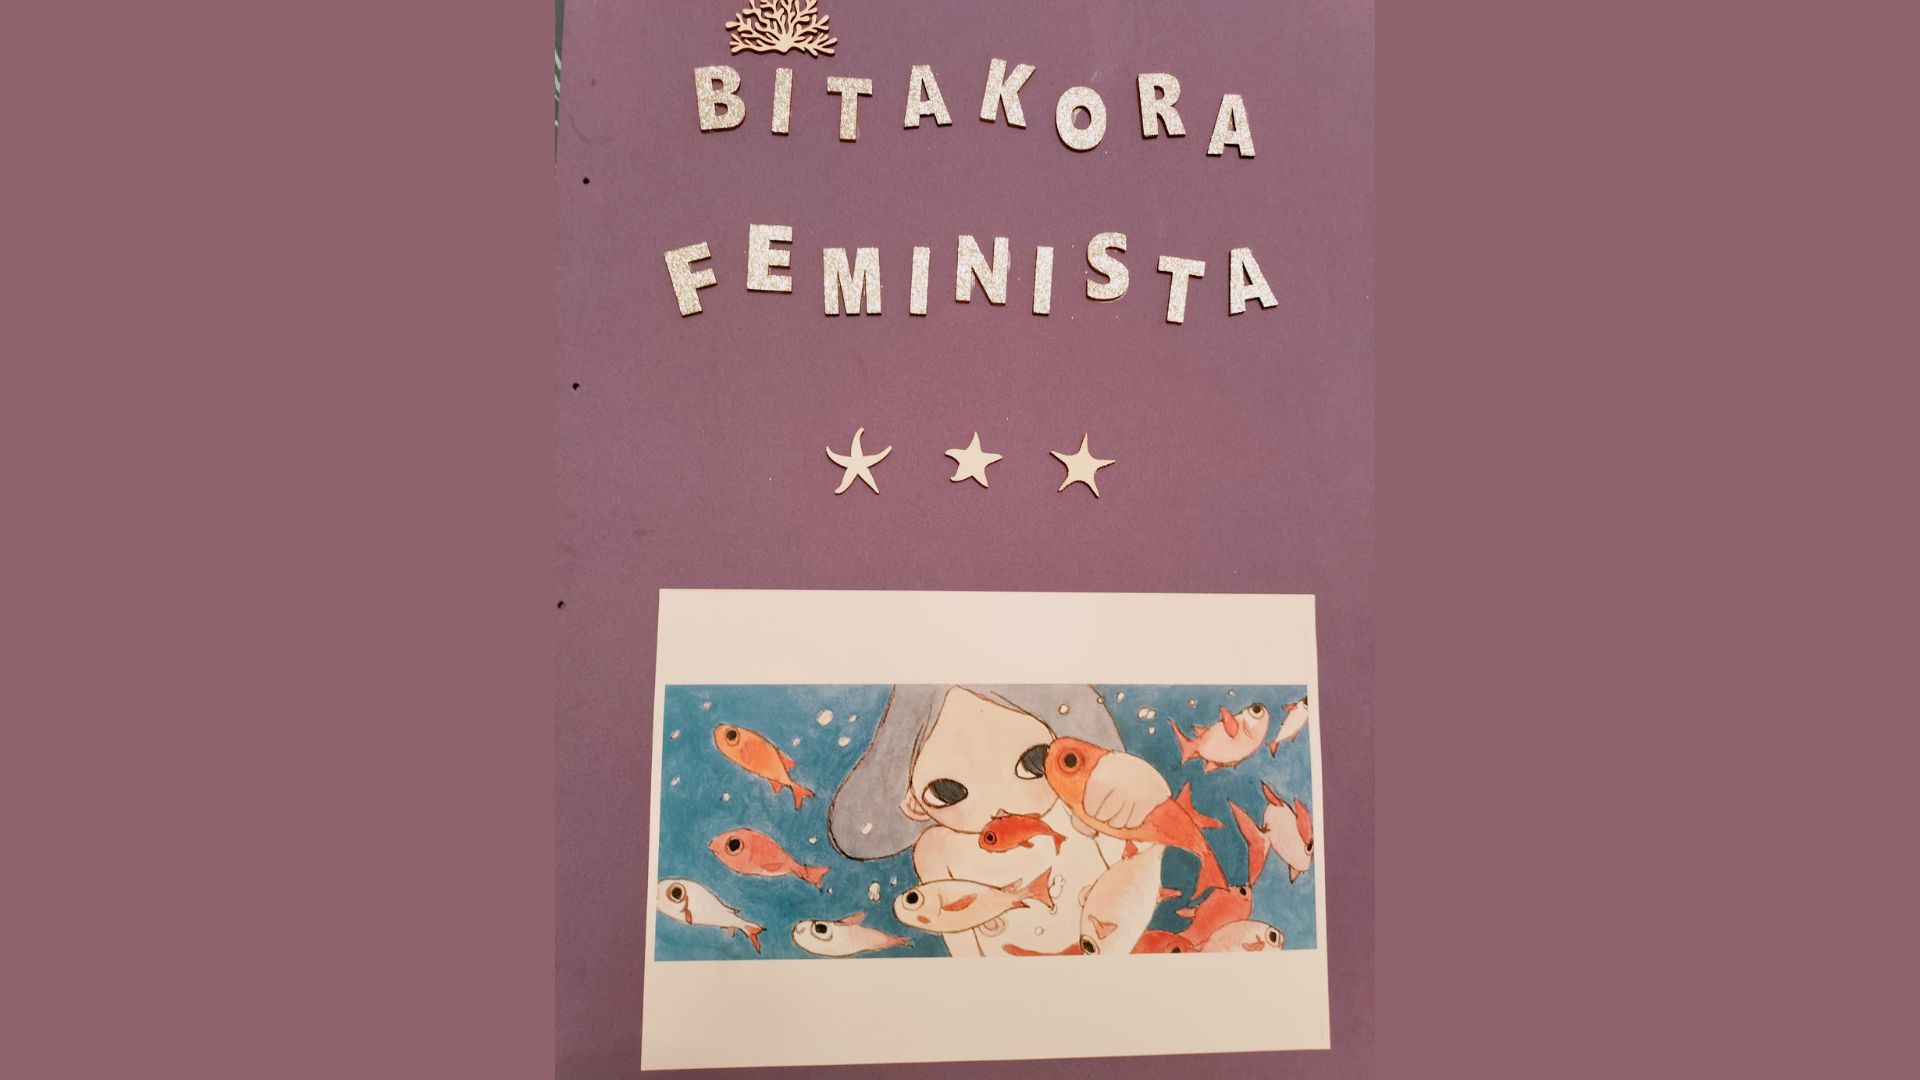 bitakora feminista